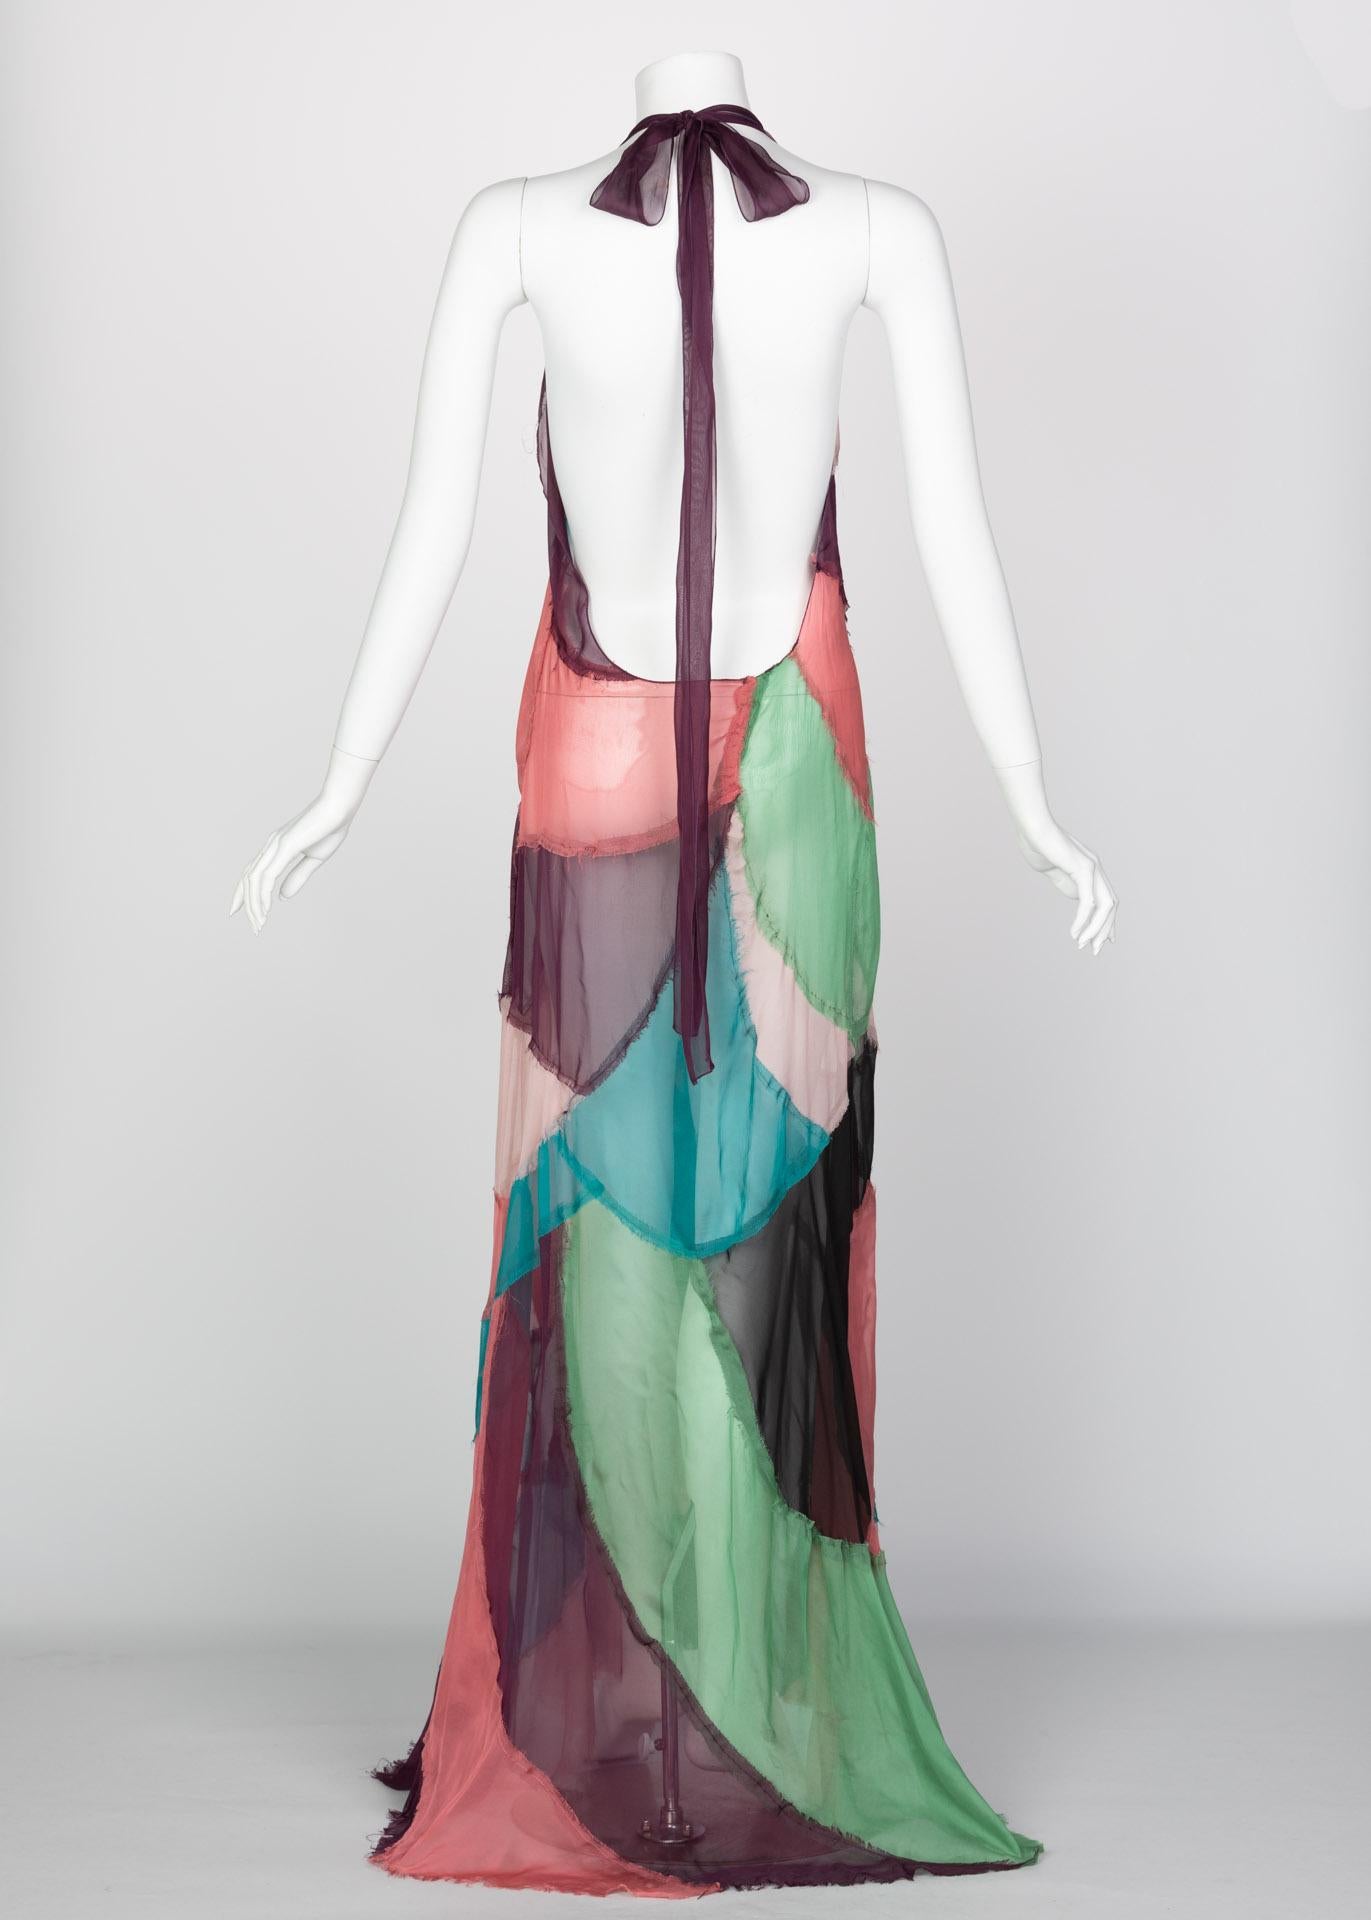 Alberta Ferretti Silk Chiffon Patchwork Open back Halter Gown, 2005 In Excellent Condition In Boca Raton, FL